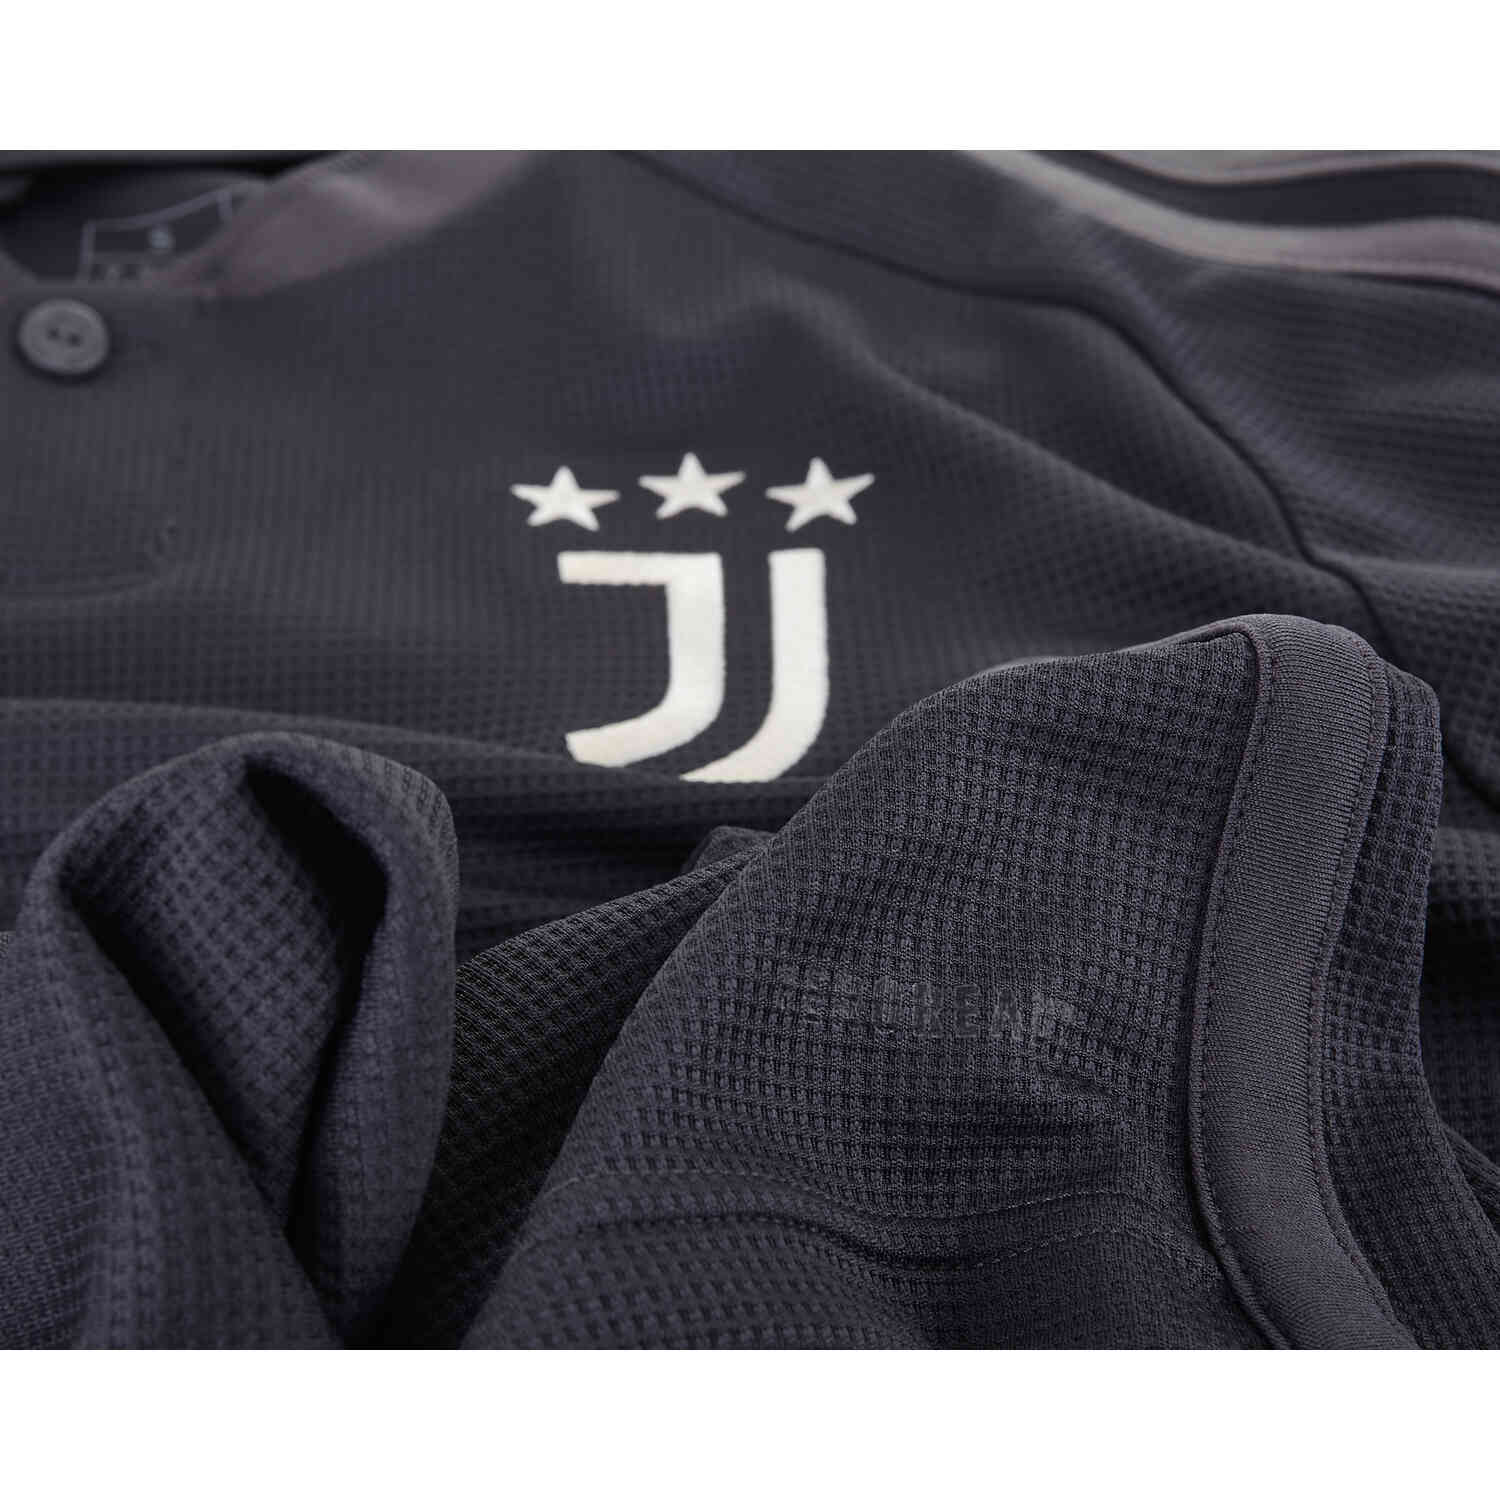 2023/2024 Kids adidas Juventus 3rd Jersey